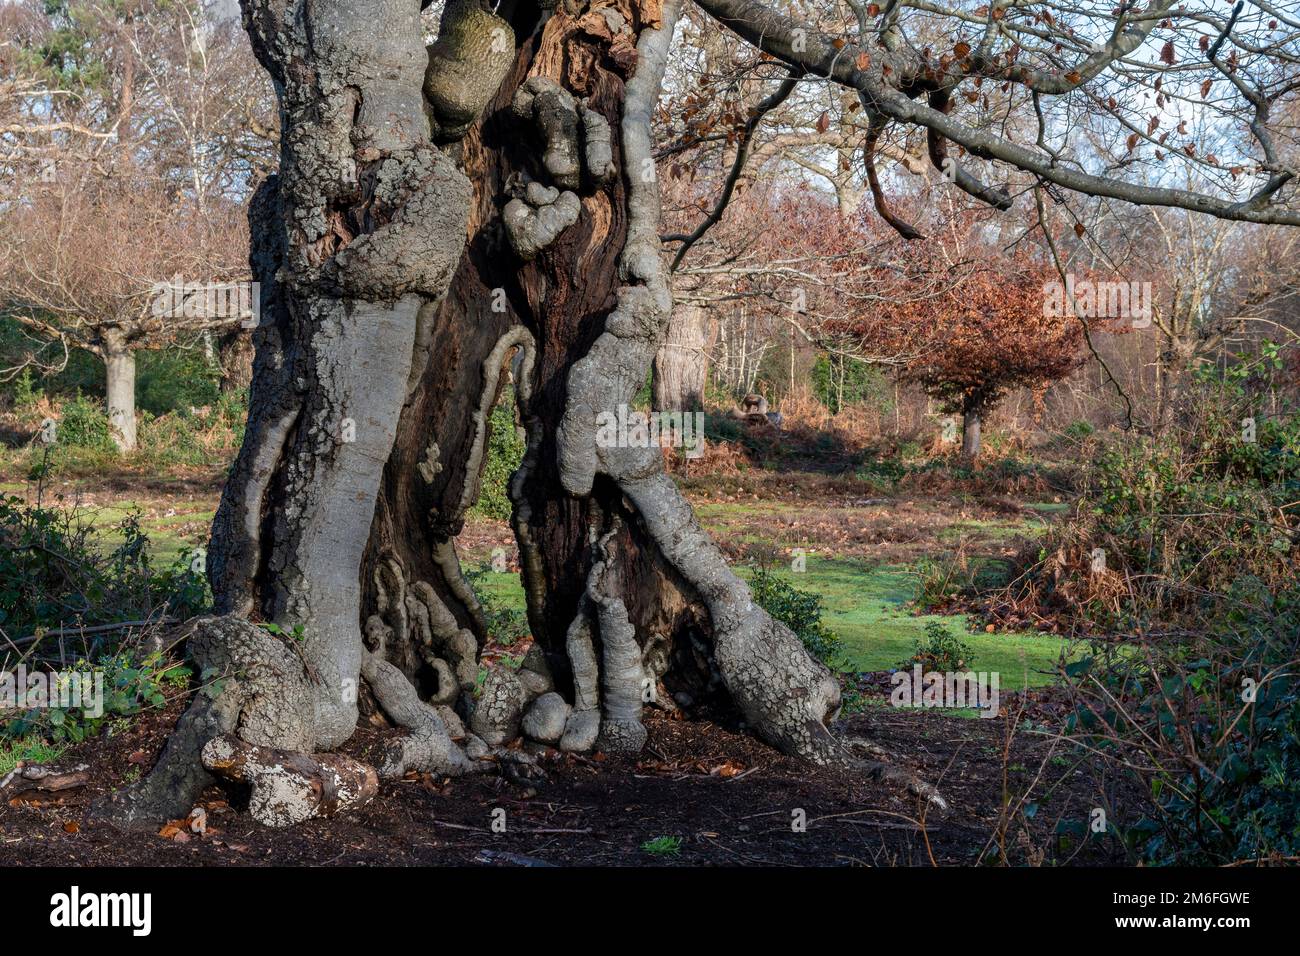 Un arbre ancien avec un tronc creux encore vivant et croissant Banque D'Images